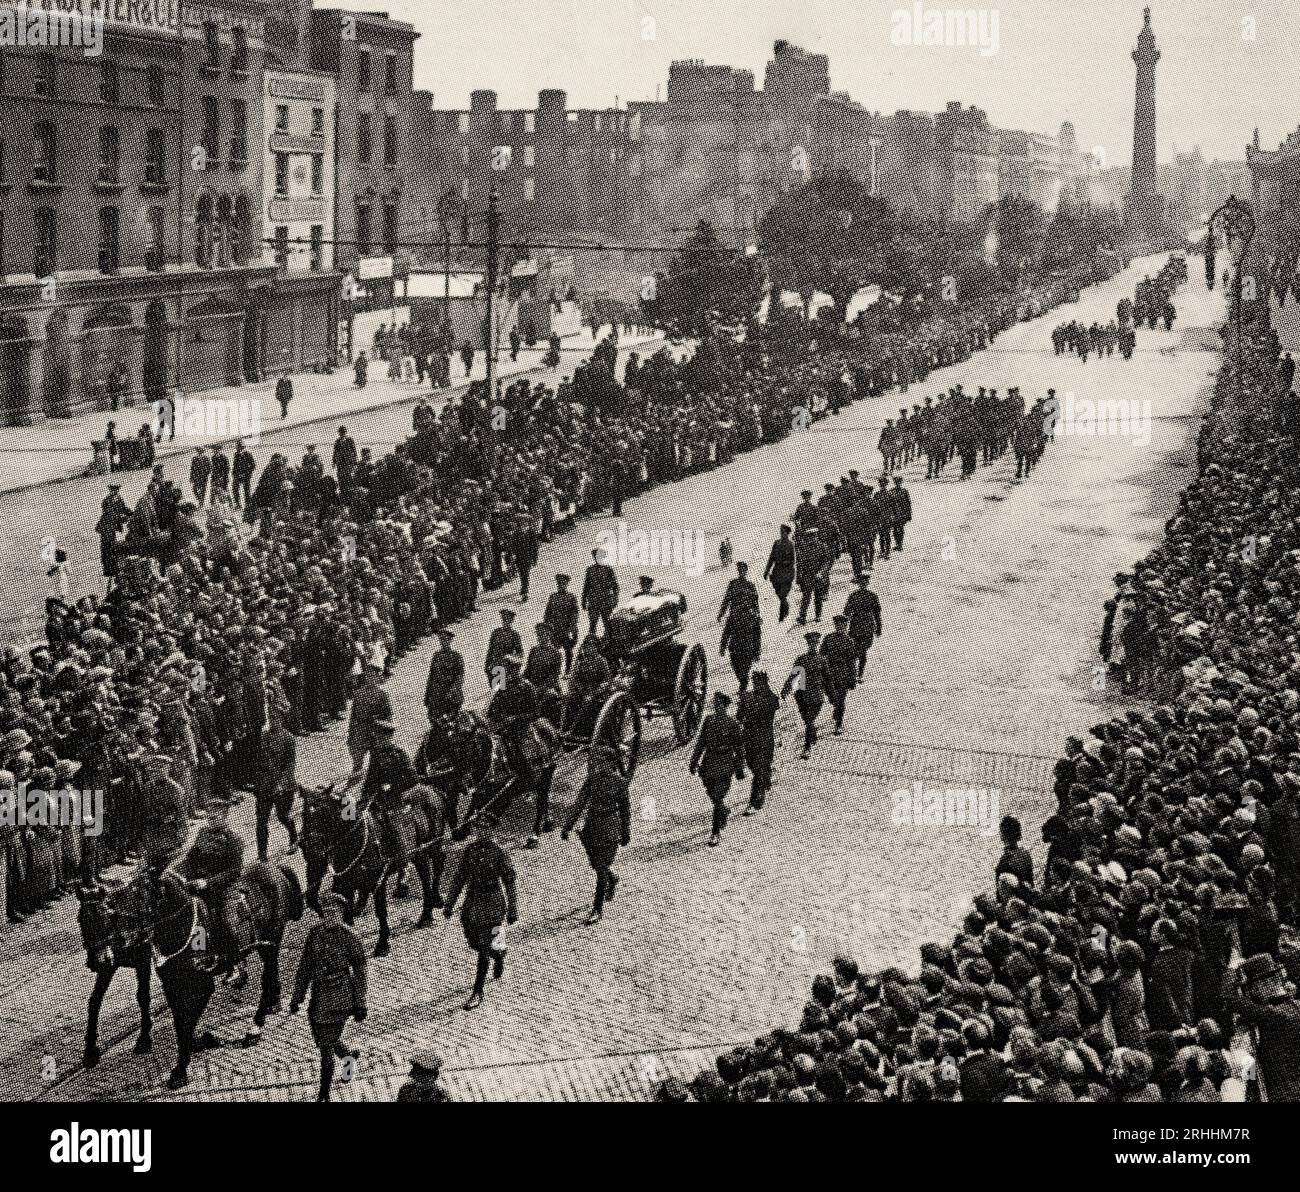 Am 22. August 1922 wurde Michael Collins in einem Hinterhalt bei Béal na mBláth außerhalb von Cork getötet. Sein Sarg auf einer Pferdekutsche wird von den Soldaten des Freistaats zu Pferd gezogen und führt die O’Connell Street hinunter auf dem Weg zum Glasnevin Cemetery am 28. August 1922. Stockfoto